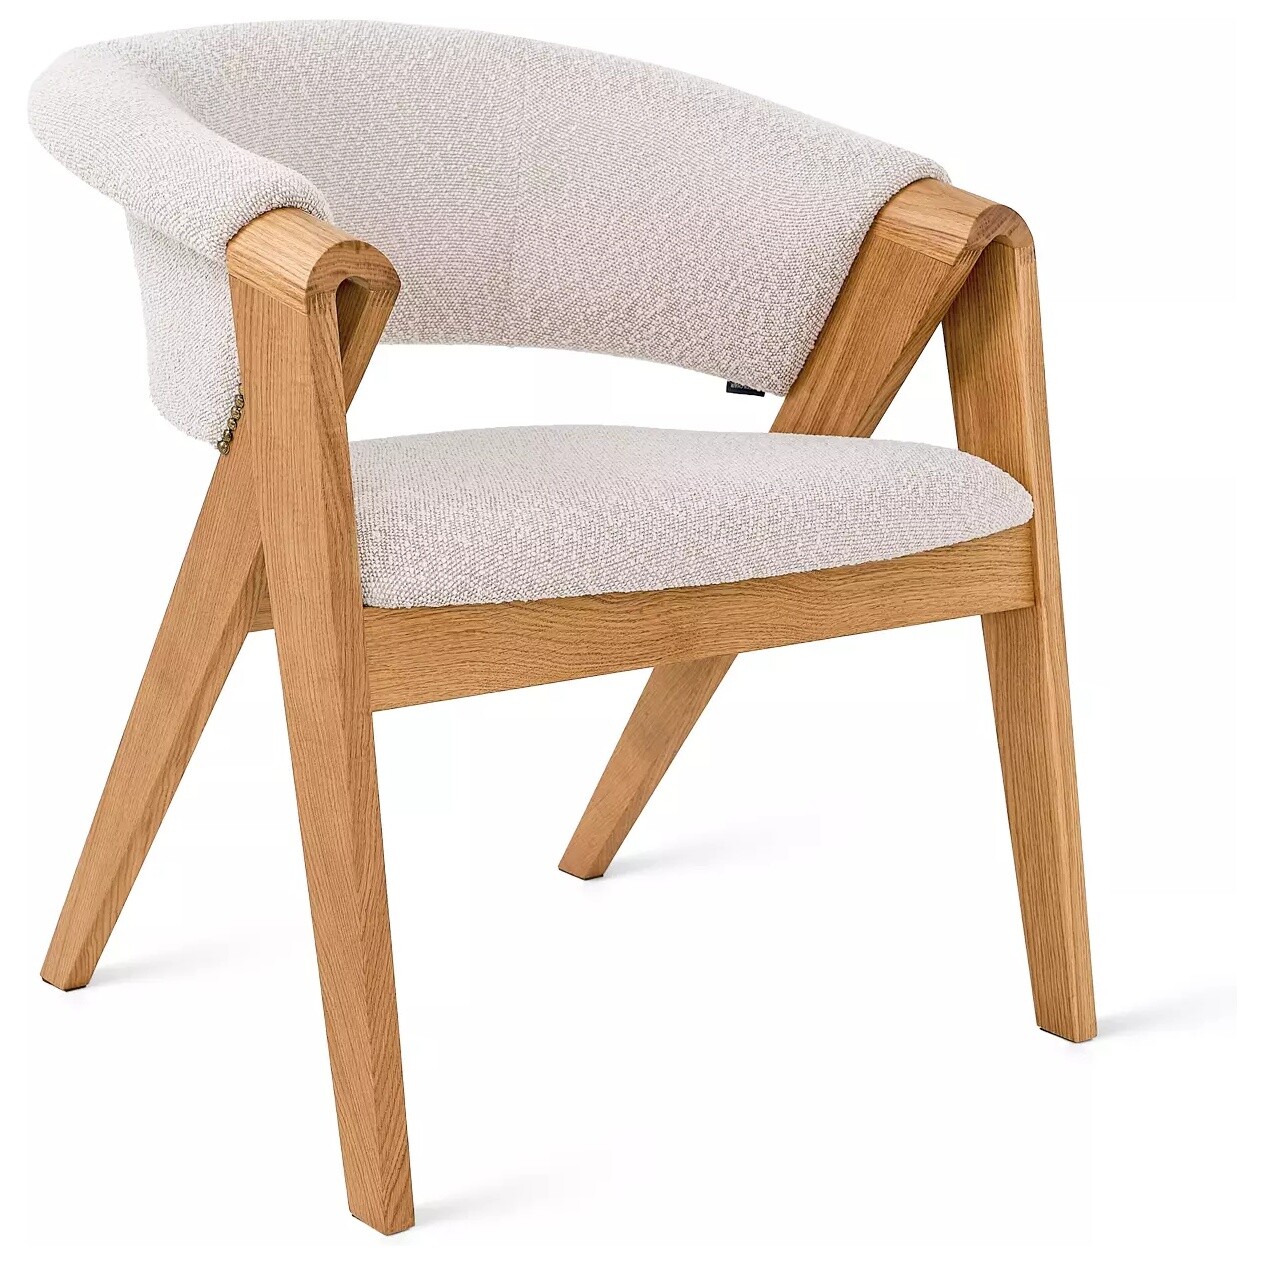 Кресло деревянное с мягким сиденьем серое, натуральное Lars